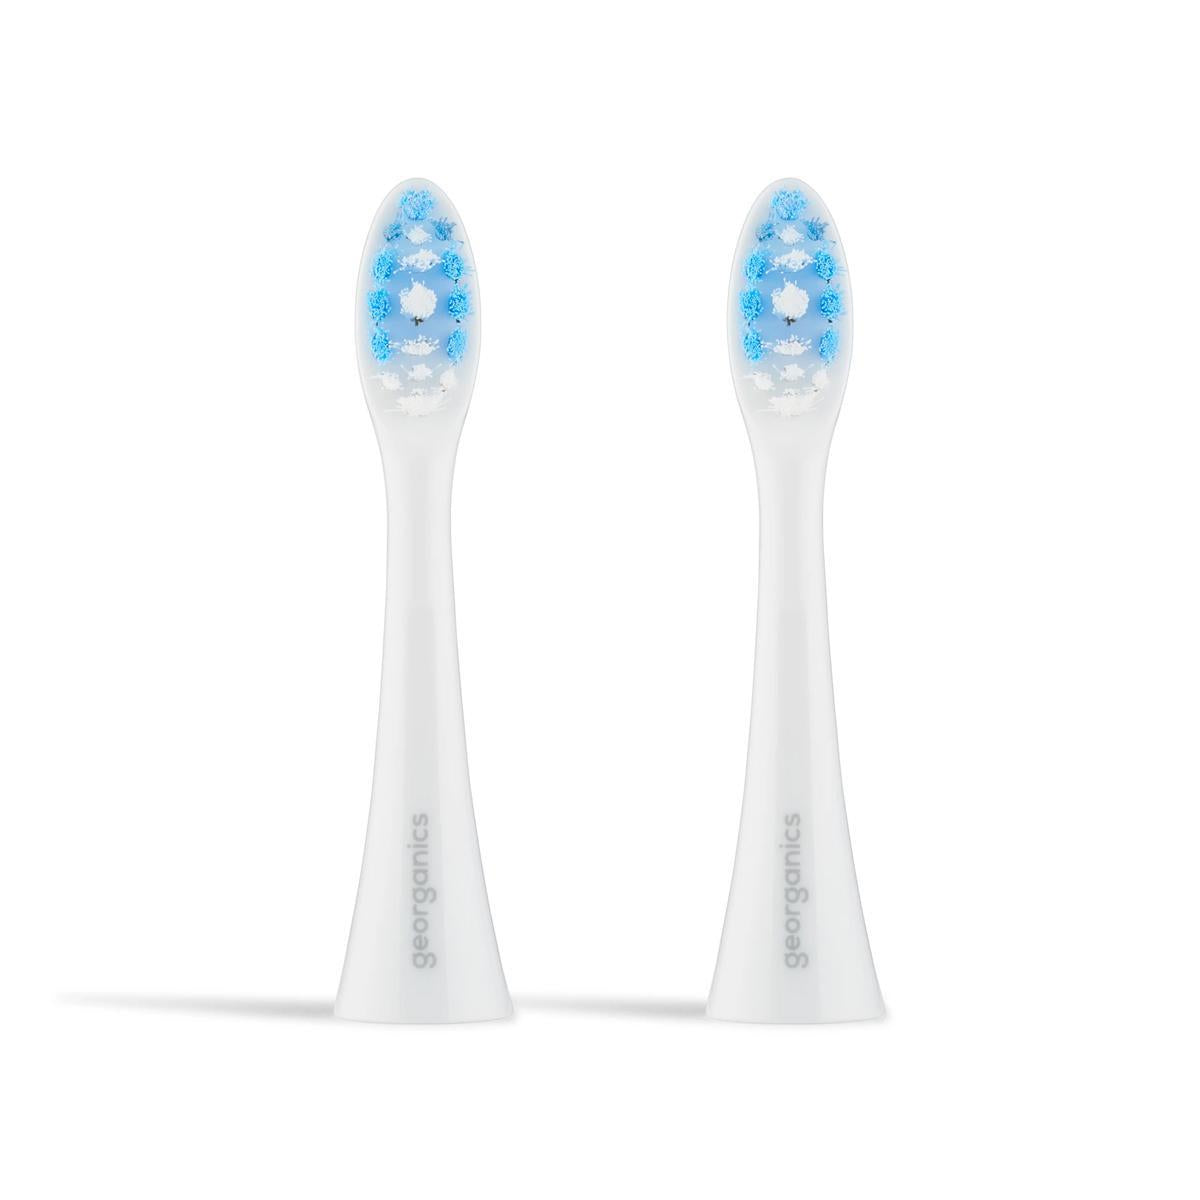 Georganics Sonic Toothbrush Replacement Heads